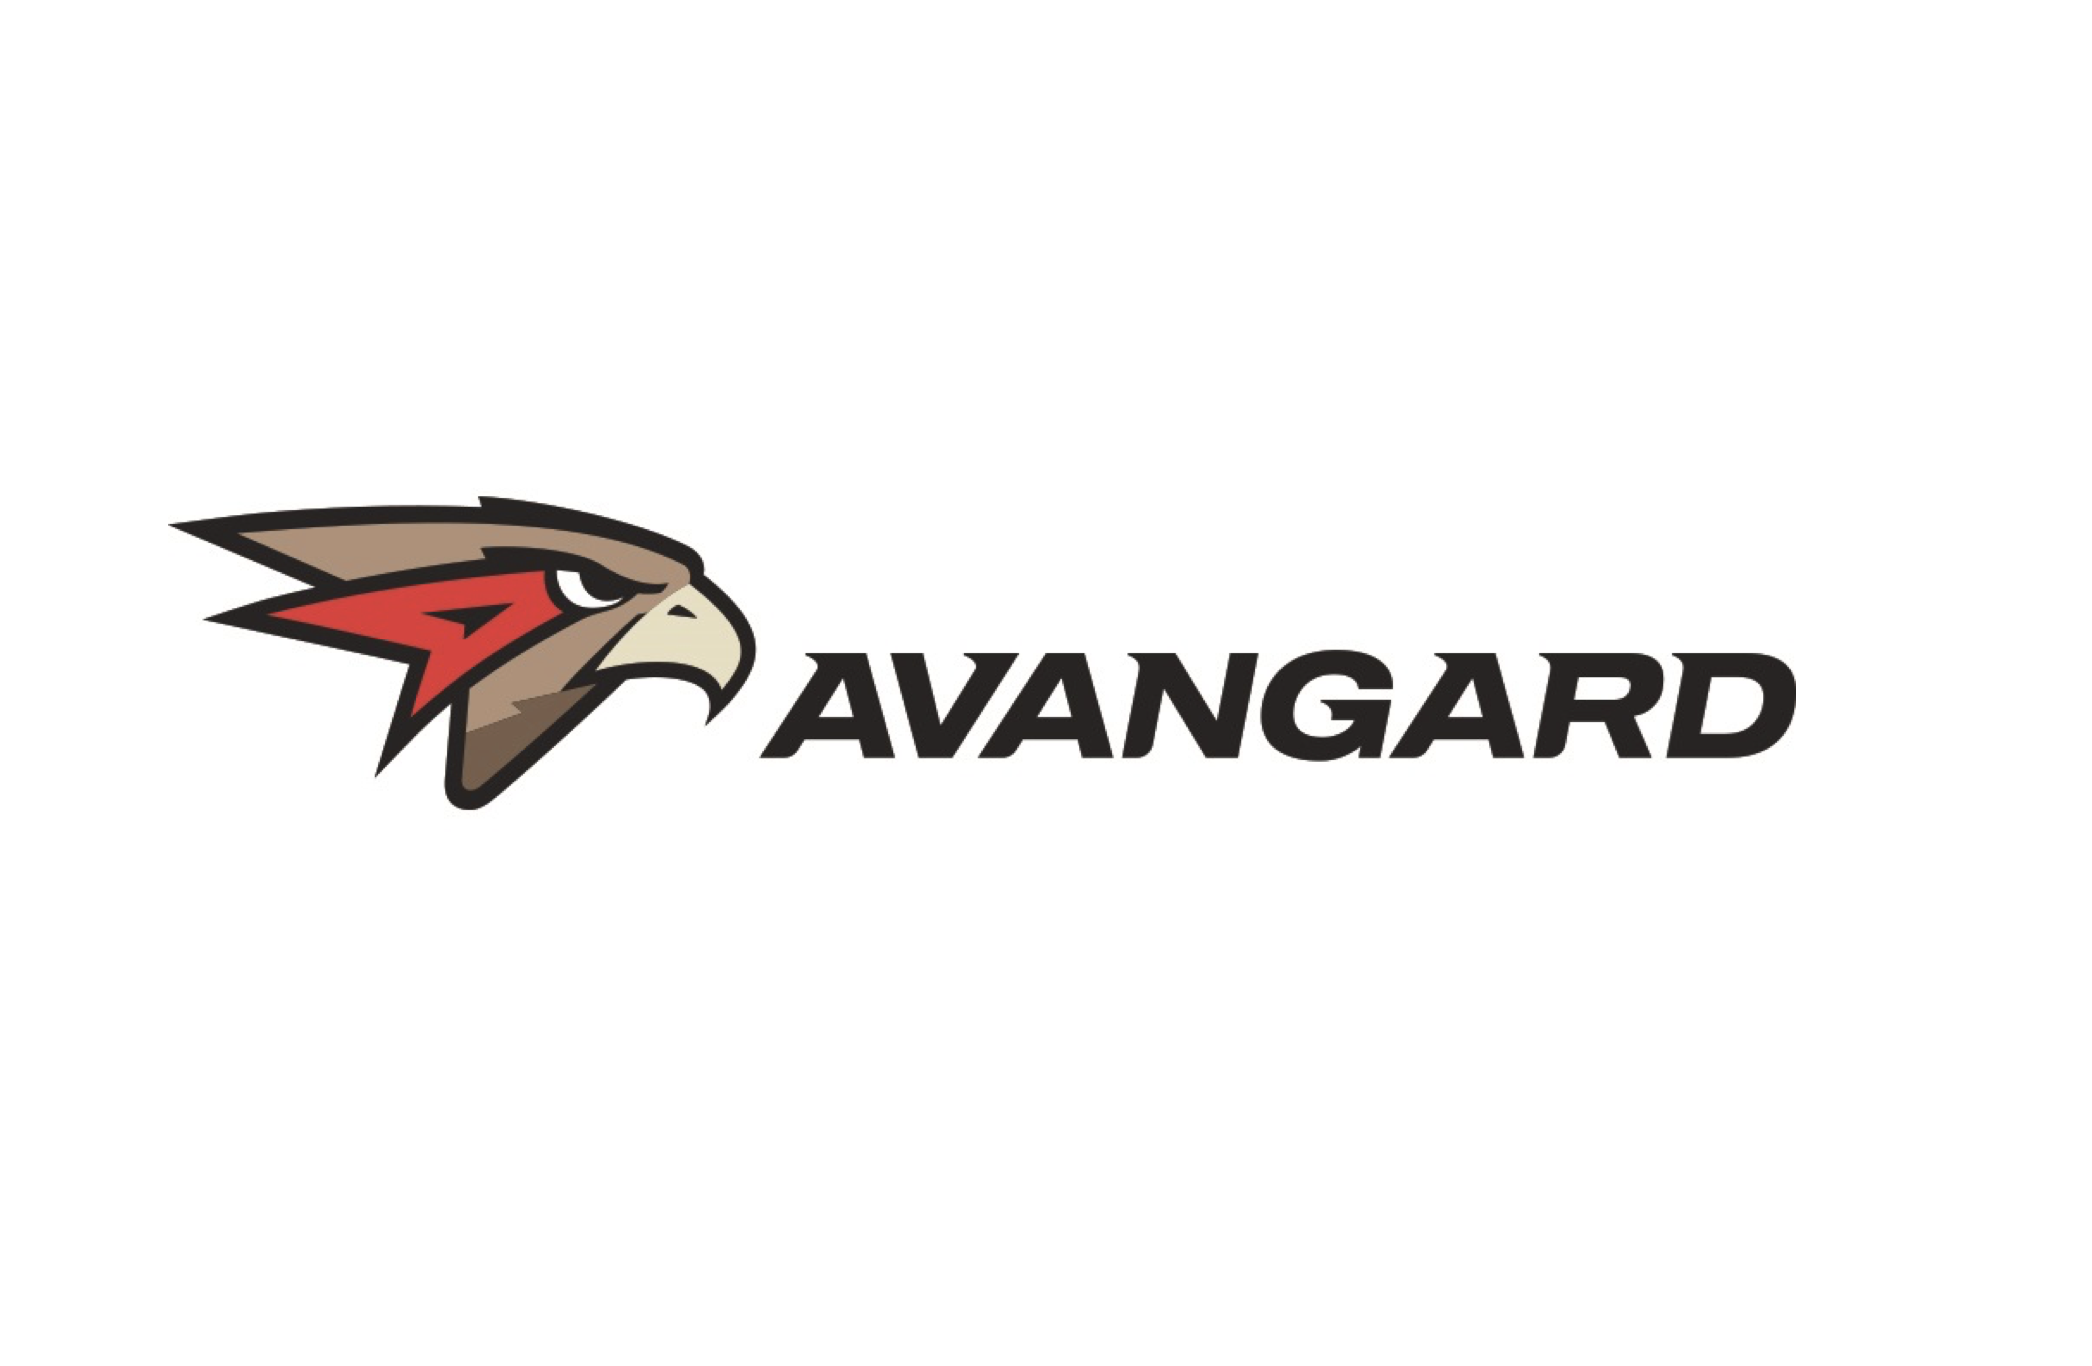 Хк Авангард логотип. Avangard хоккейный клуб лого. Авангард Омск новый логотип. Омский Авангард хк логотип.